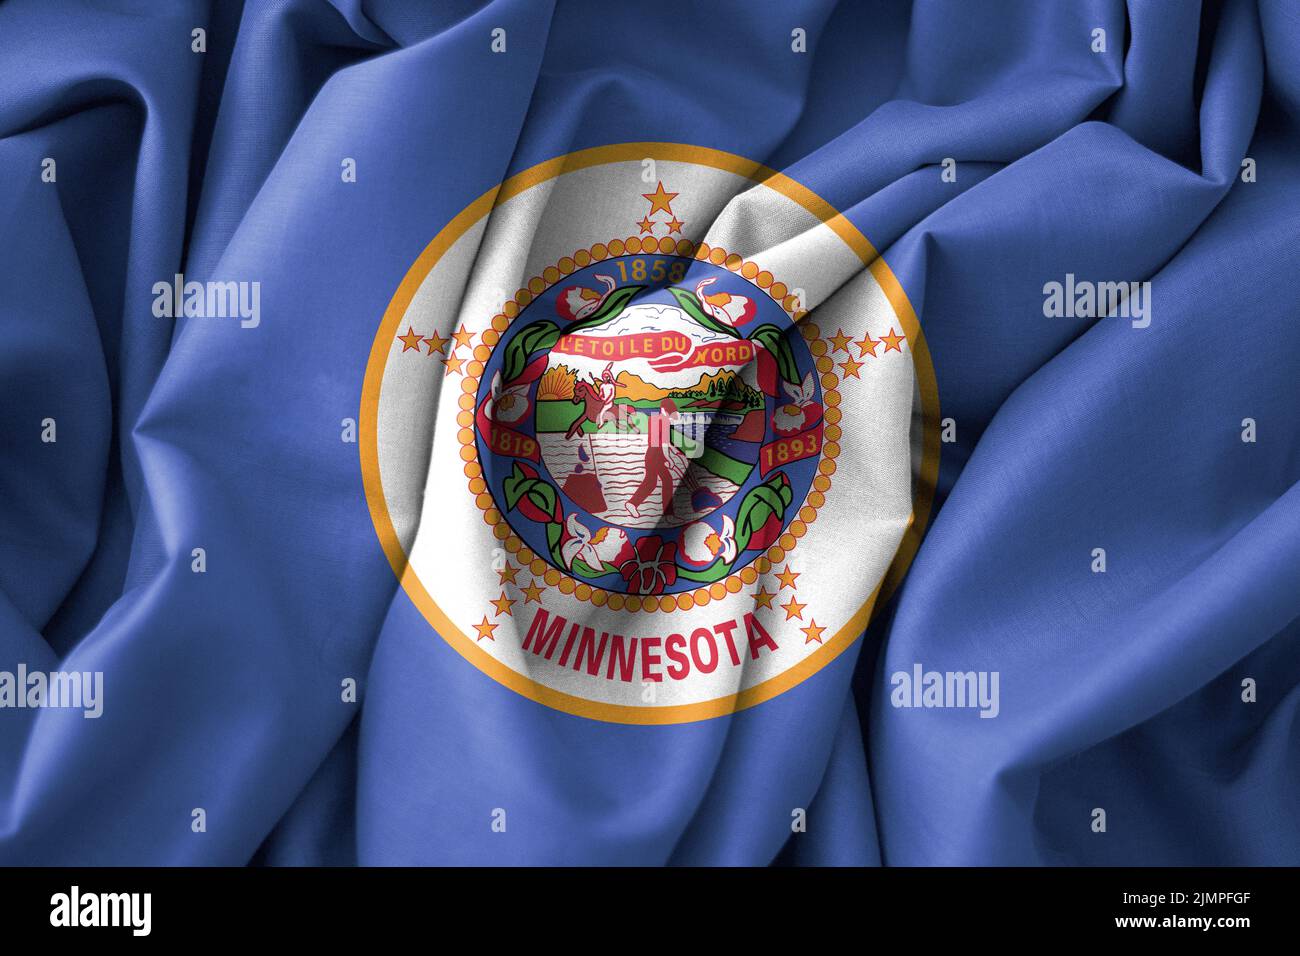 Minnesota Flag, USA State Flag Minnesota, fabric flag Minnesota, 3D work and 3D image Stock Photo